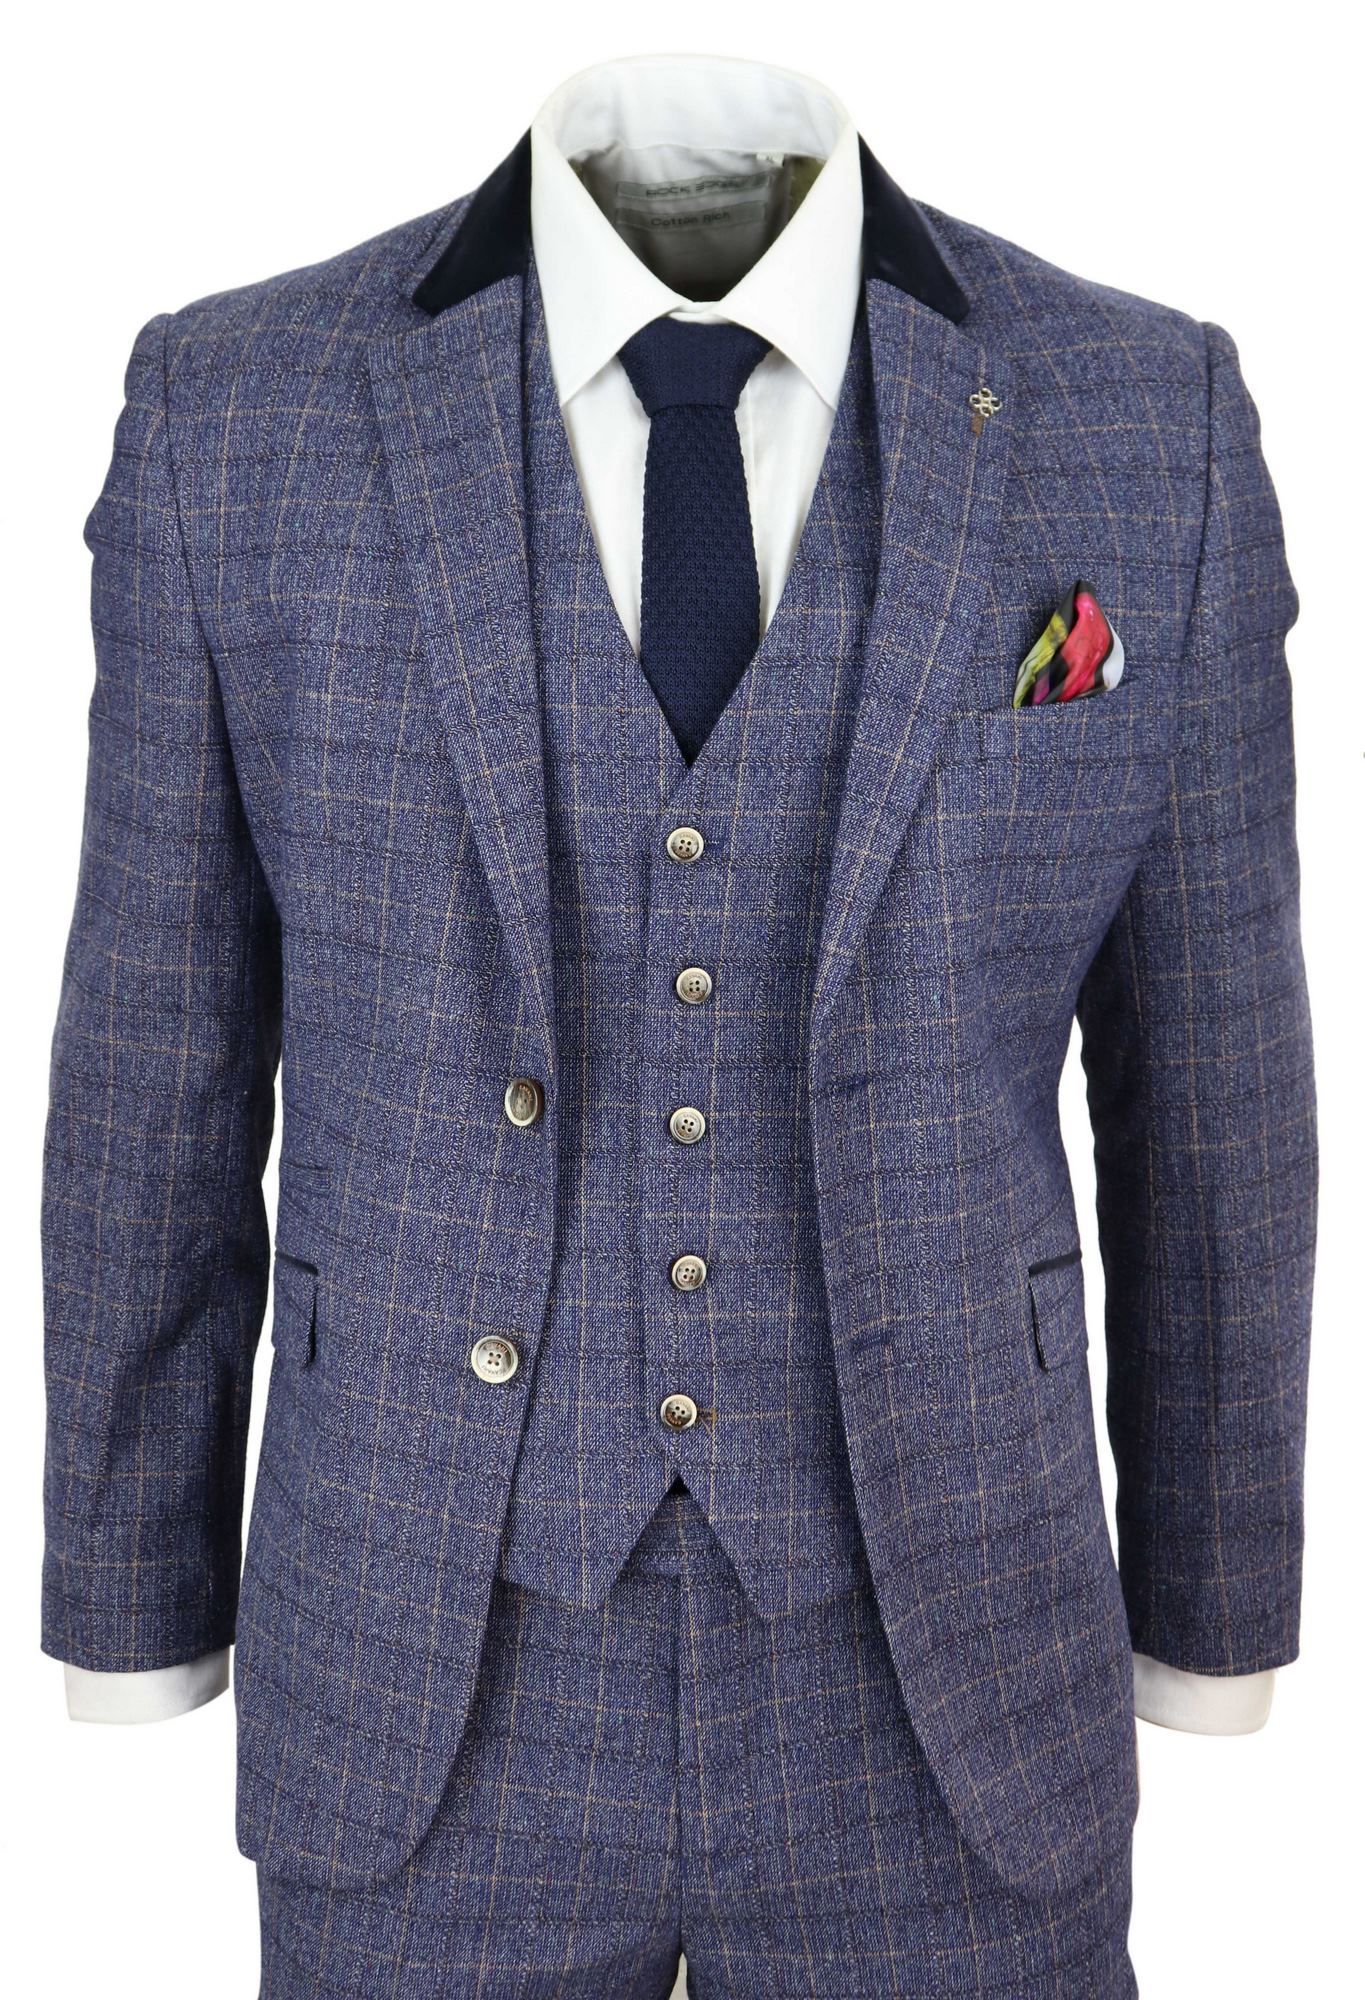 Mens Blue Check 3 Piece Suit - Cavani Matteo: Buy Online - Happy Gentleman